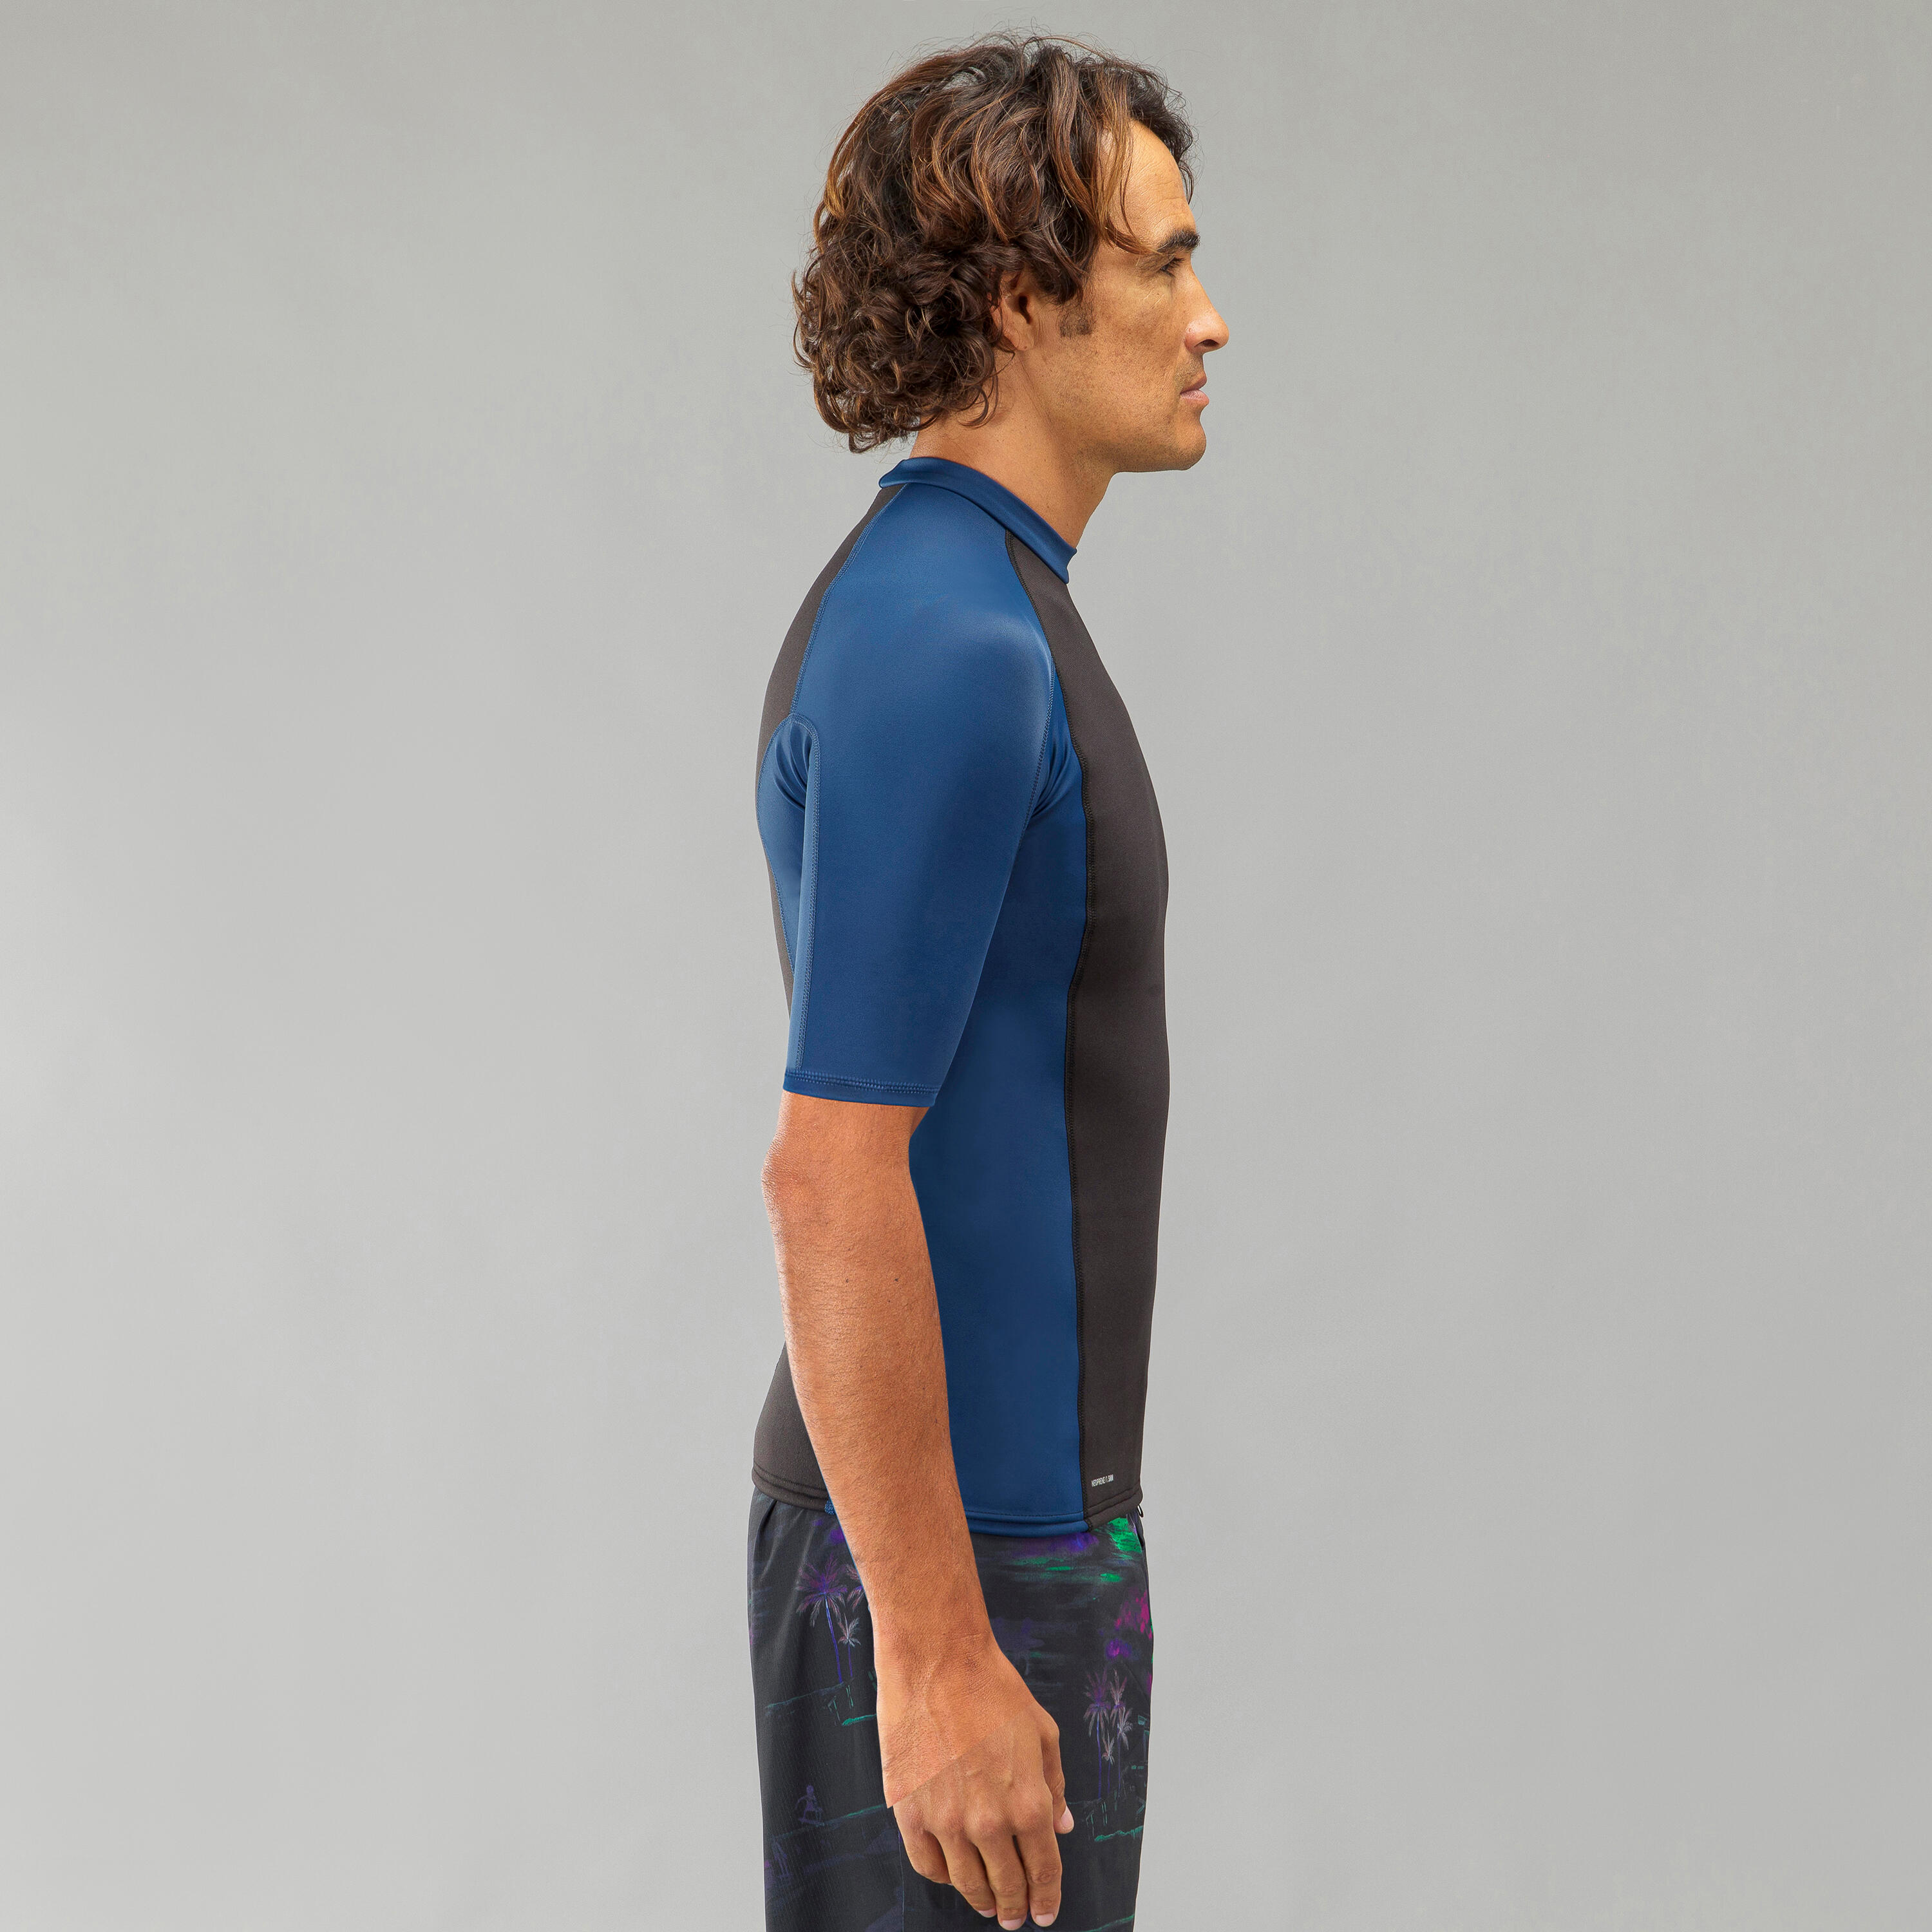 Men's surfing short-sleeved neoprene thermal anti-UV T-shirt top. 8/8